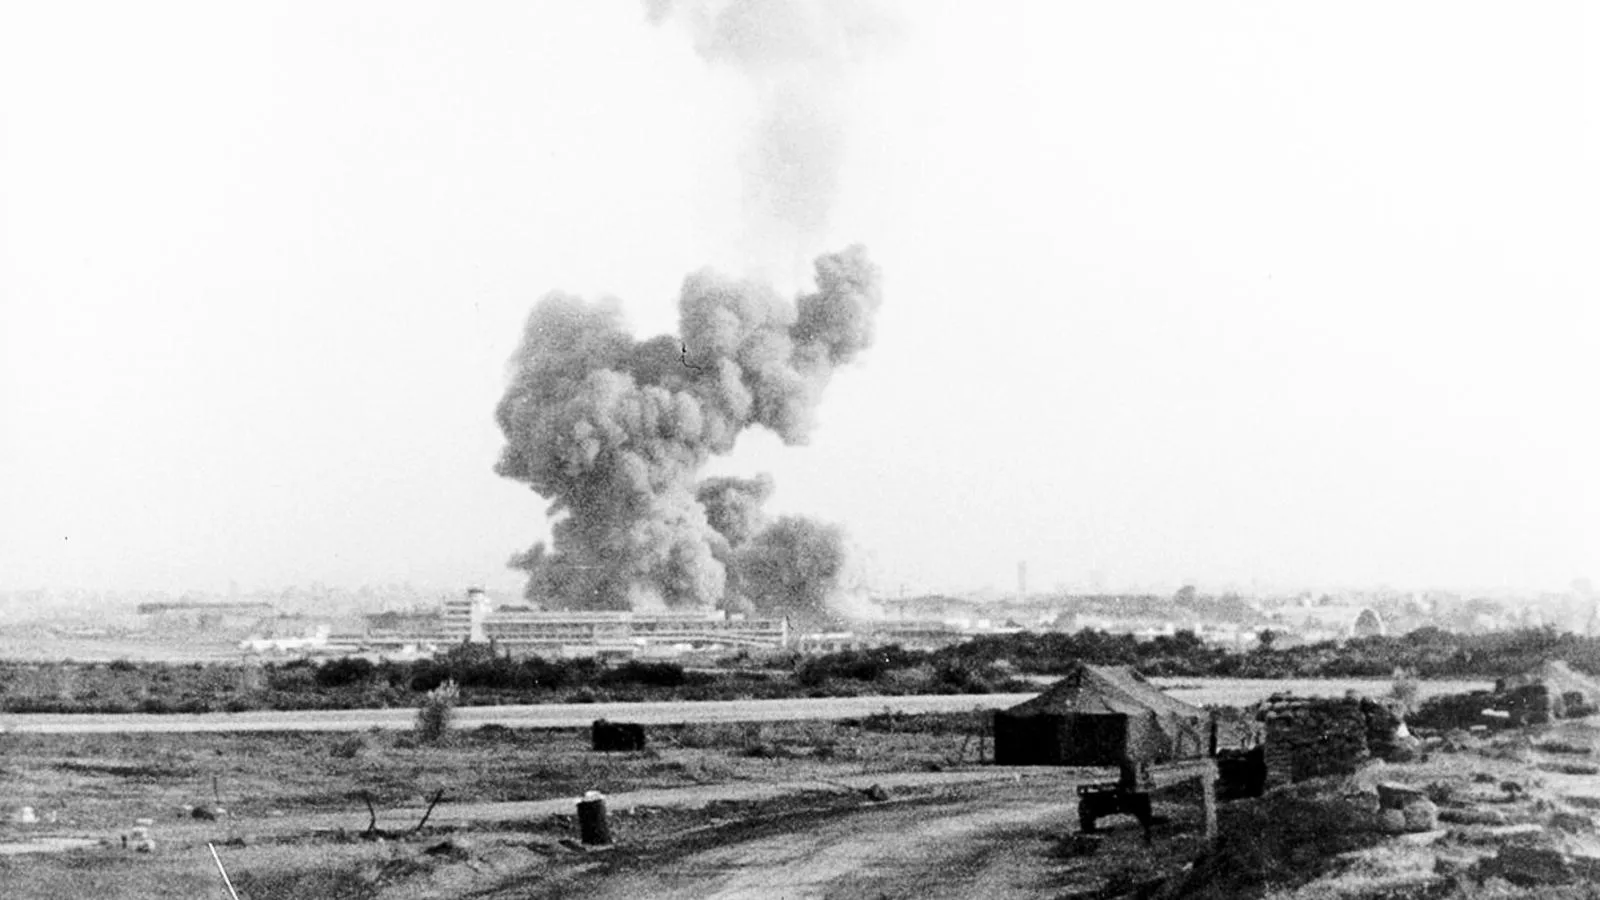 Облако дыма над разбомбленными американскими казармами в международном аэропорту Бейрута, где погибли более 200 морских пехотинцев США, октябрь 1983 года